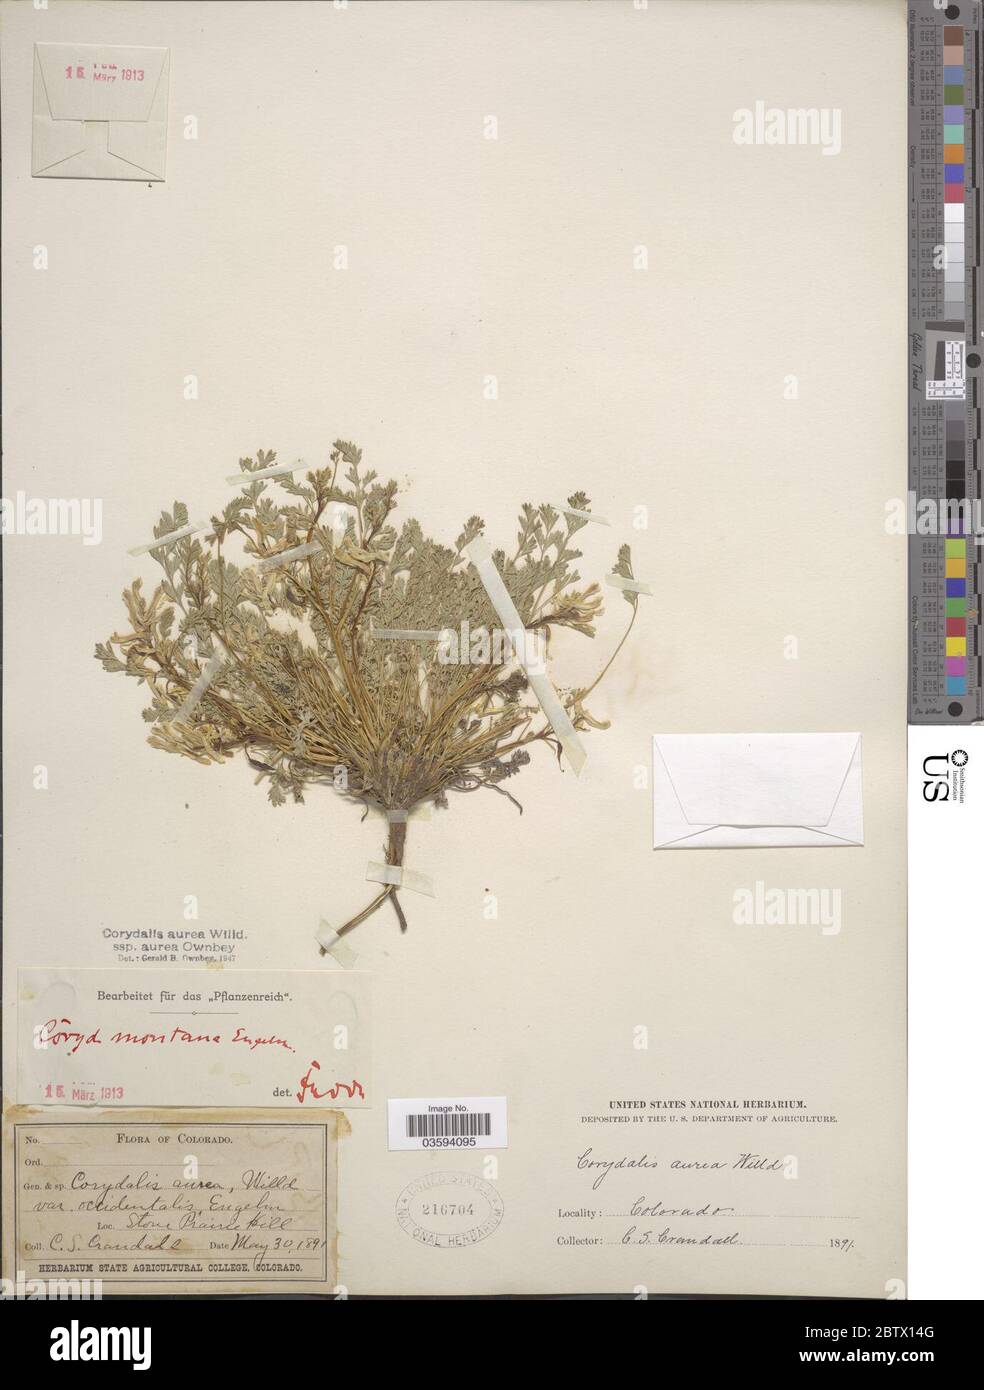 Corydalis aurea Willd. Stock Photo